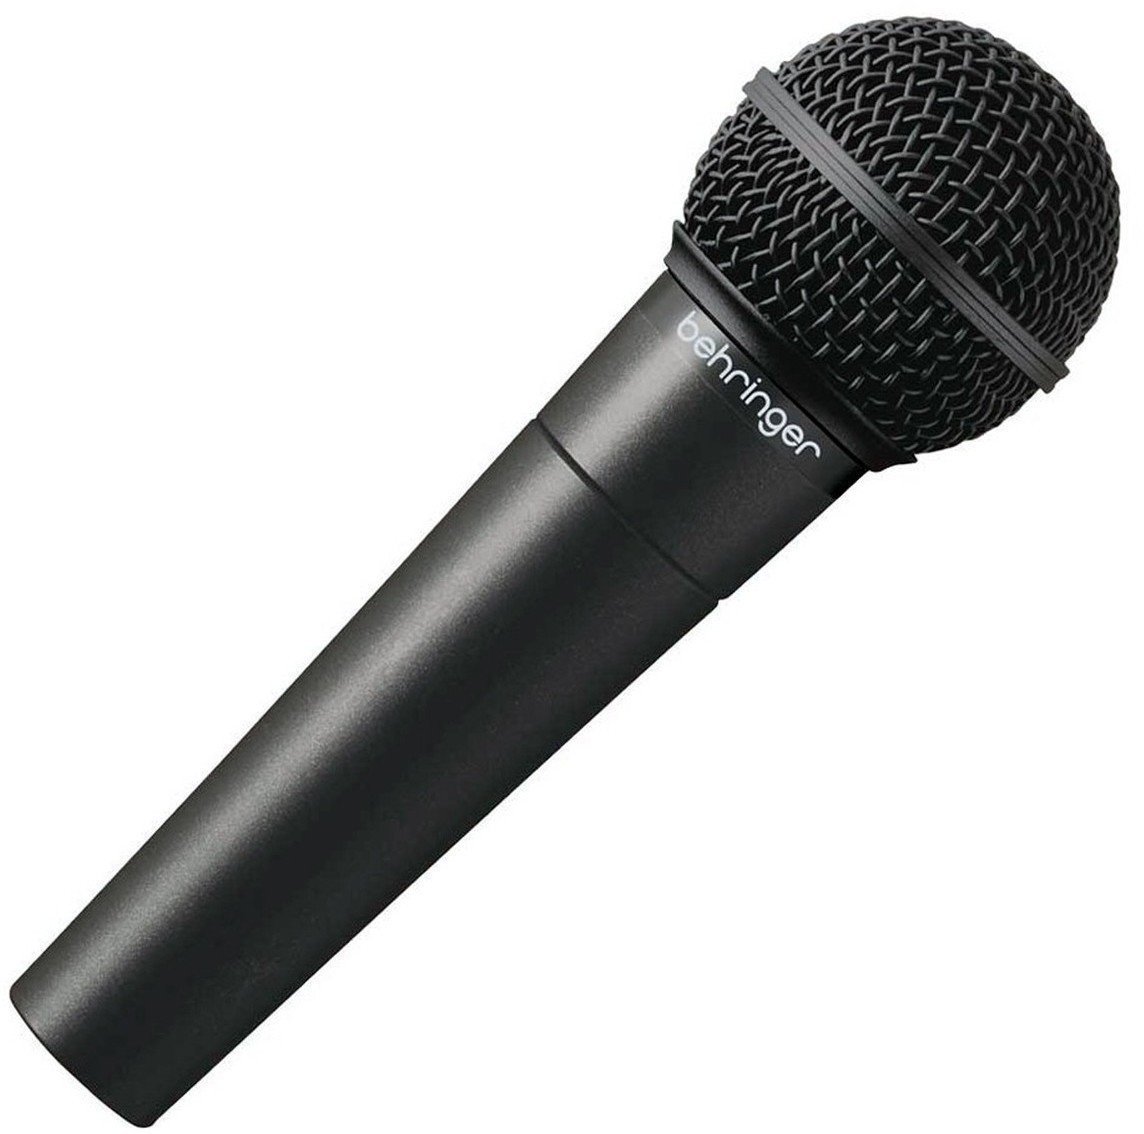 Micrófono dinámico vocal Behringer XM 8500 ULTRAVOICE Micrófono dinámico vocal